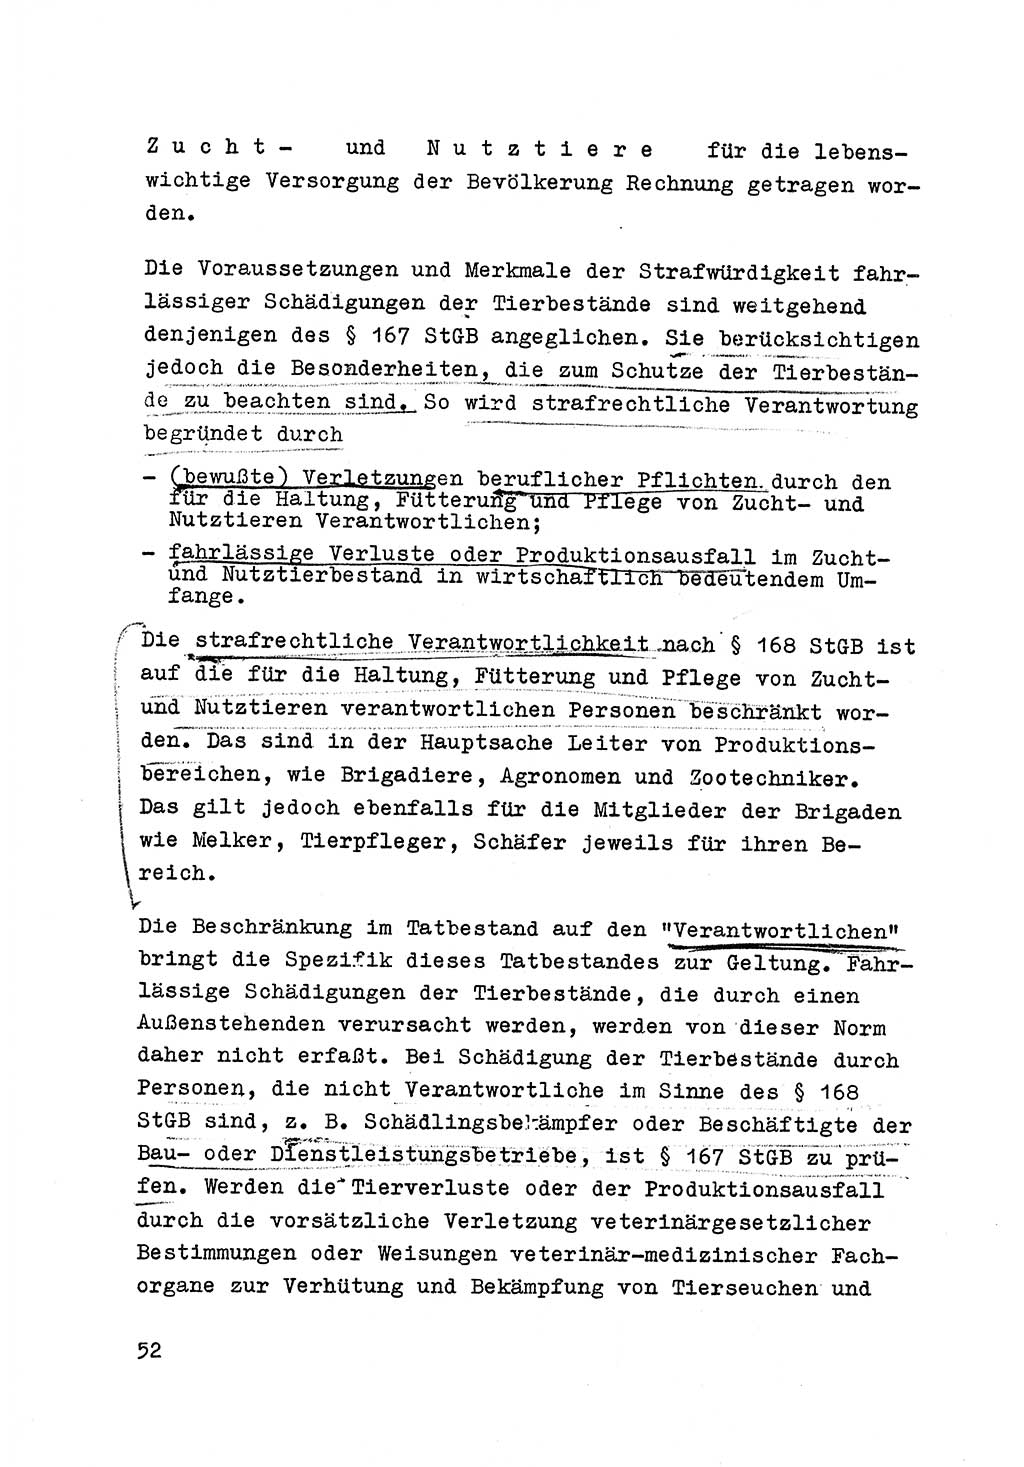 Strafrecht der DDR (Deutsche Demokratische Republik), Besonderer Teil, Lehrmaterial, Heft 6 1970, Seite 52 (Strafr. DDR BT Lehrmat. H. 6 1970, S. 52)